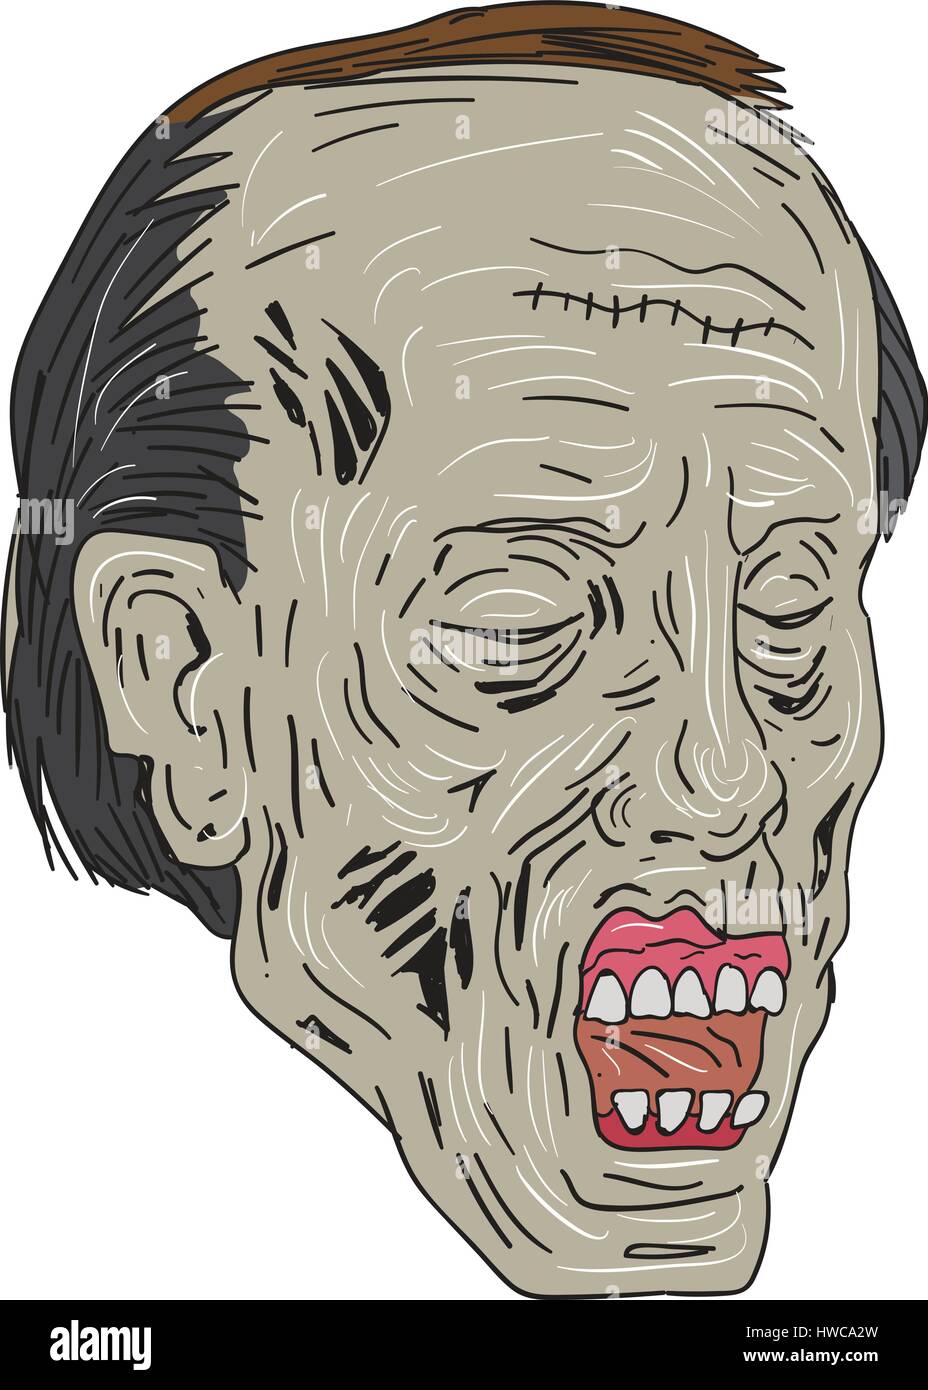 Zeichnung Skizze Stil Abbildung eines Zombie Schädel Kopf mit Augen geschlossen in eine Dreiviertelansicht auf isolierten weißen Hintergrund gesetzt. Stock Vektor